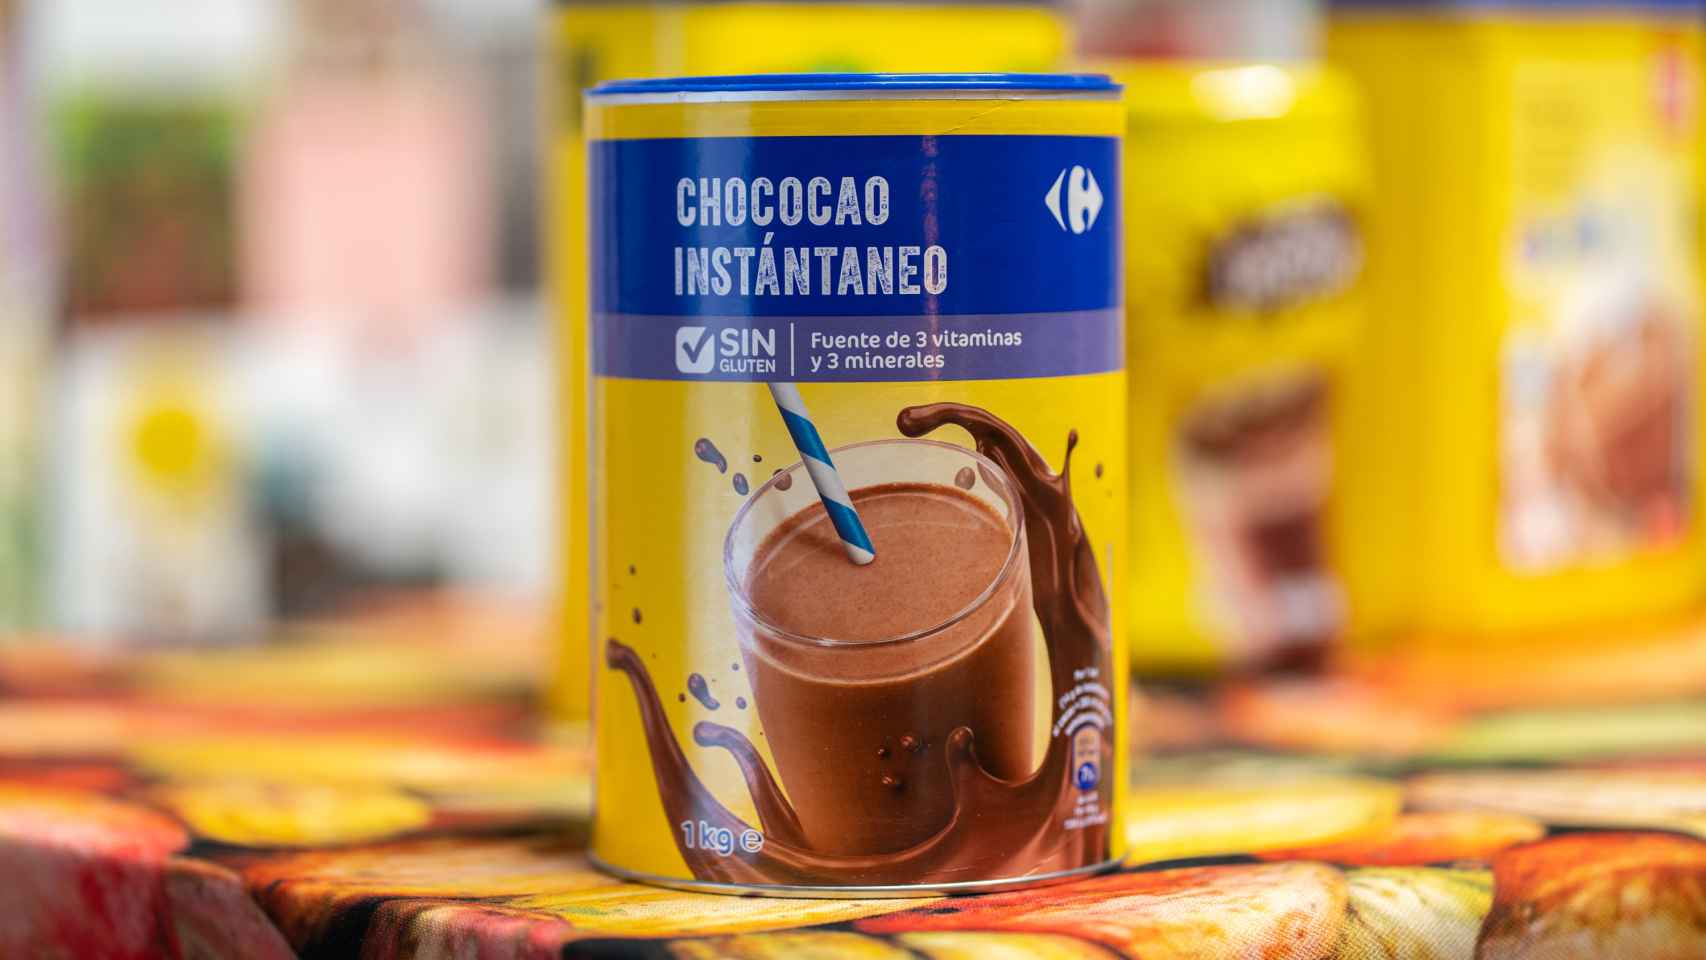 El cacao soluble de Chococao, la marca blanca de Carrefour.